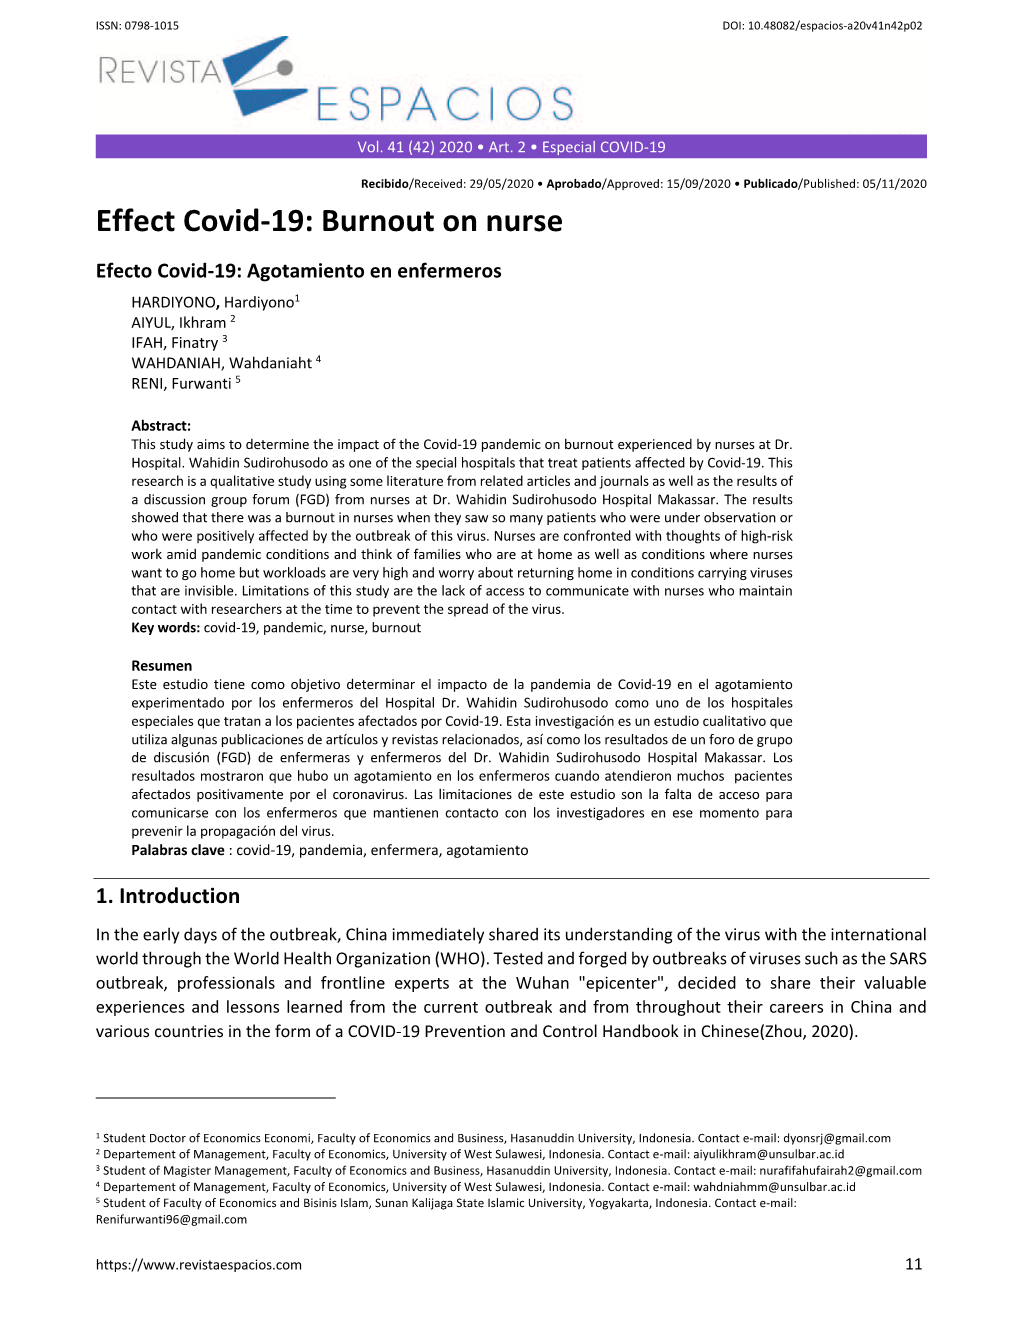 Burnout on Nurse